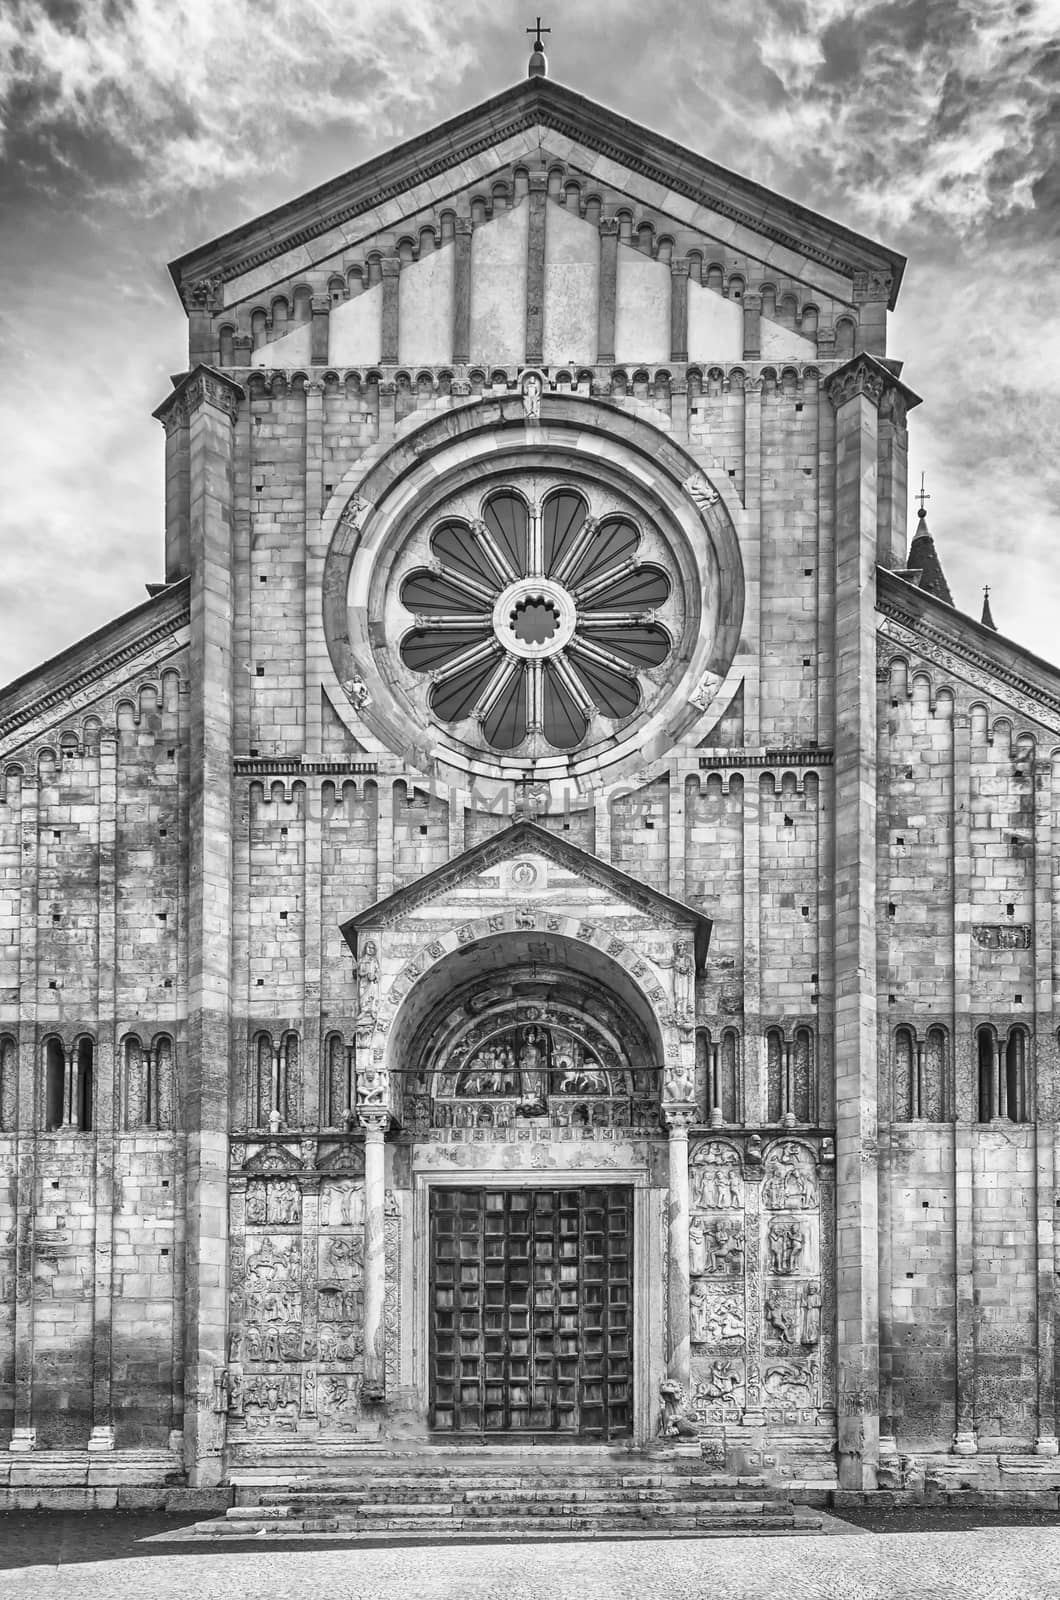 San Zeno Cathedral, Verona, Italy by marcorubino